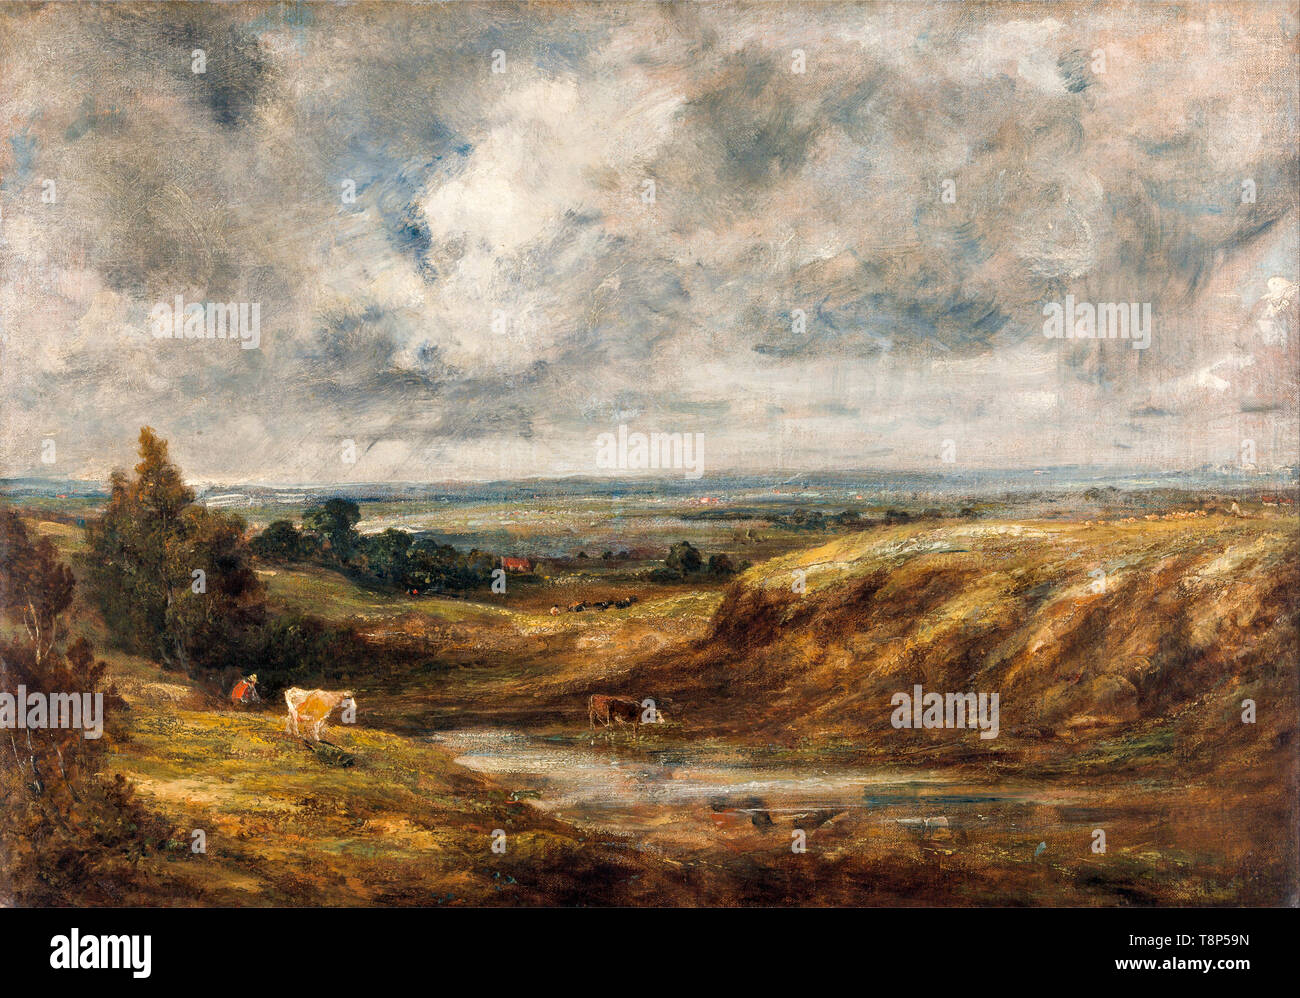 John Constable, le Thames Valley de Hampstead Heath, peinture, ch. 1829 Banque D'Images